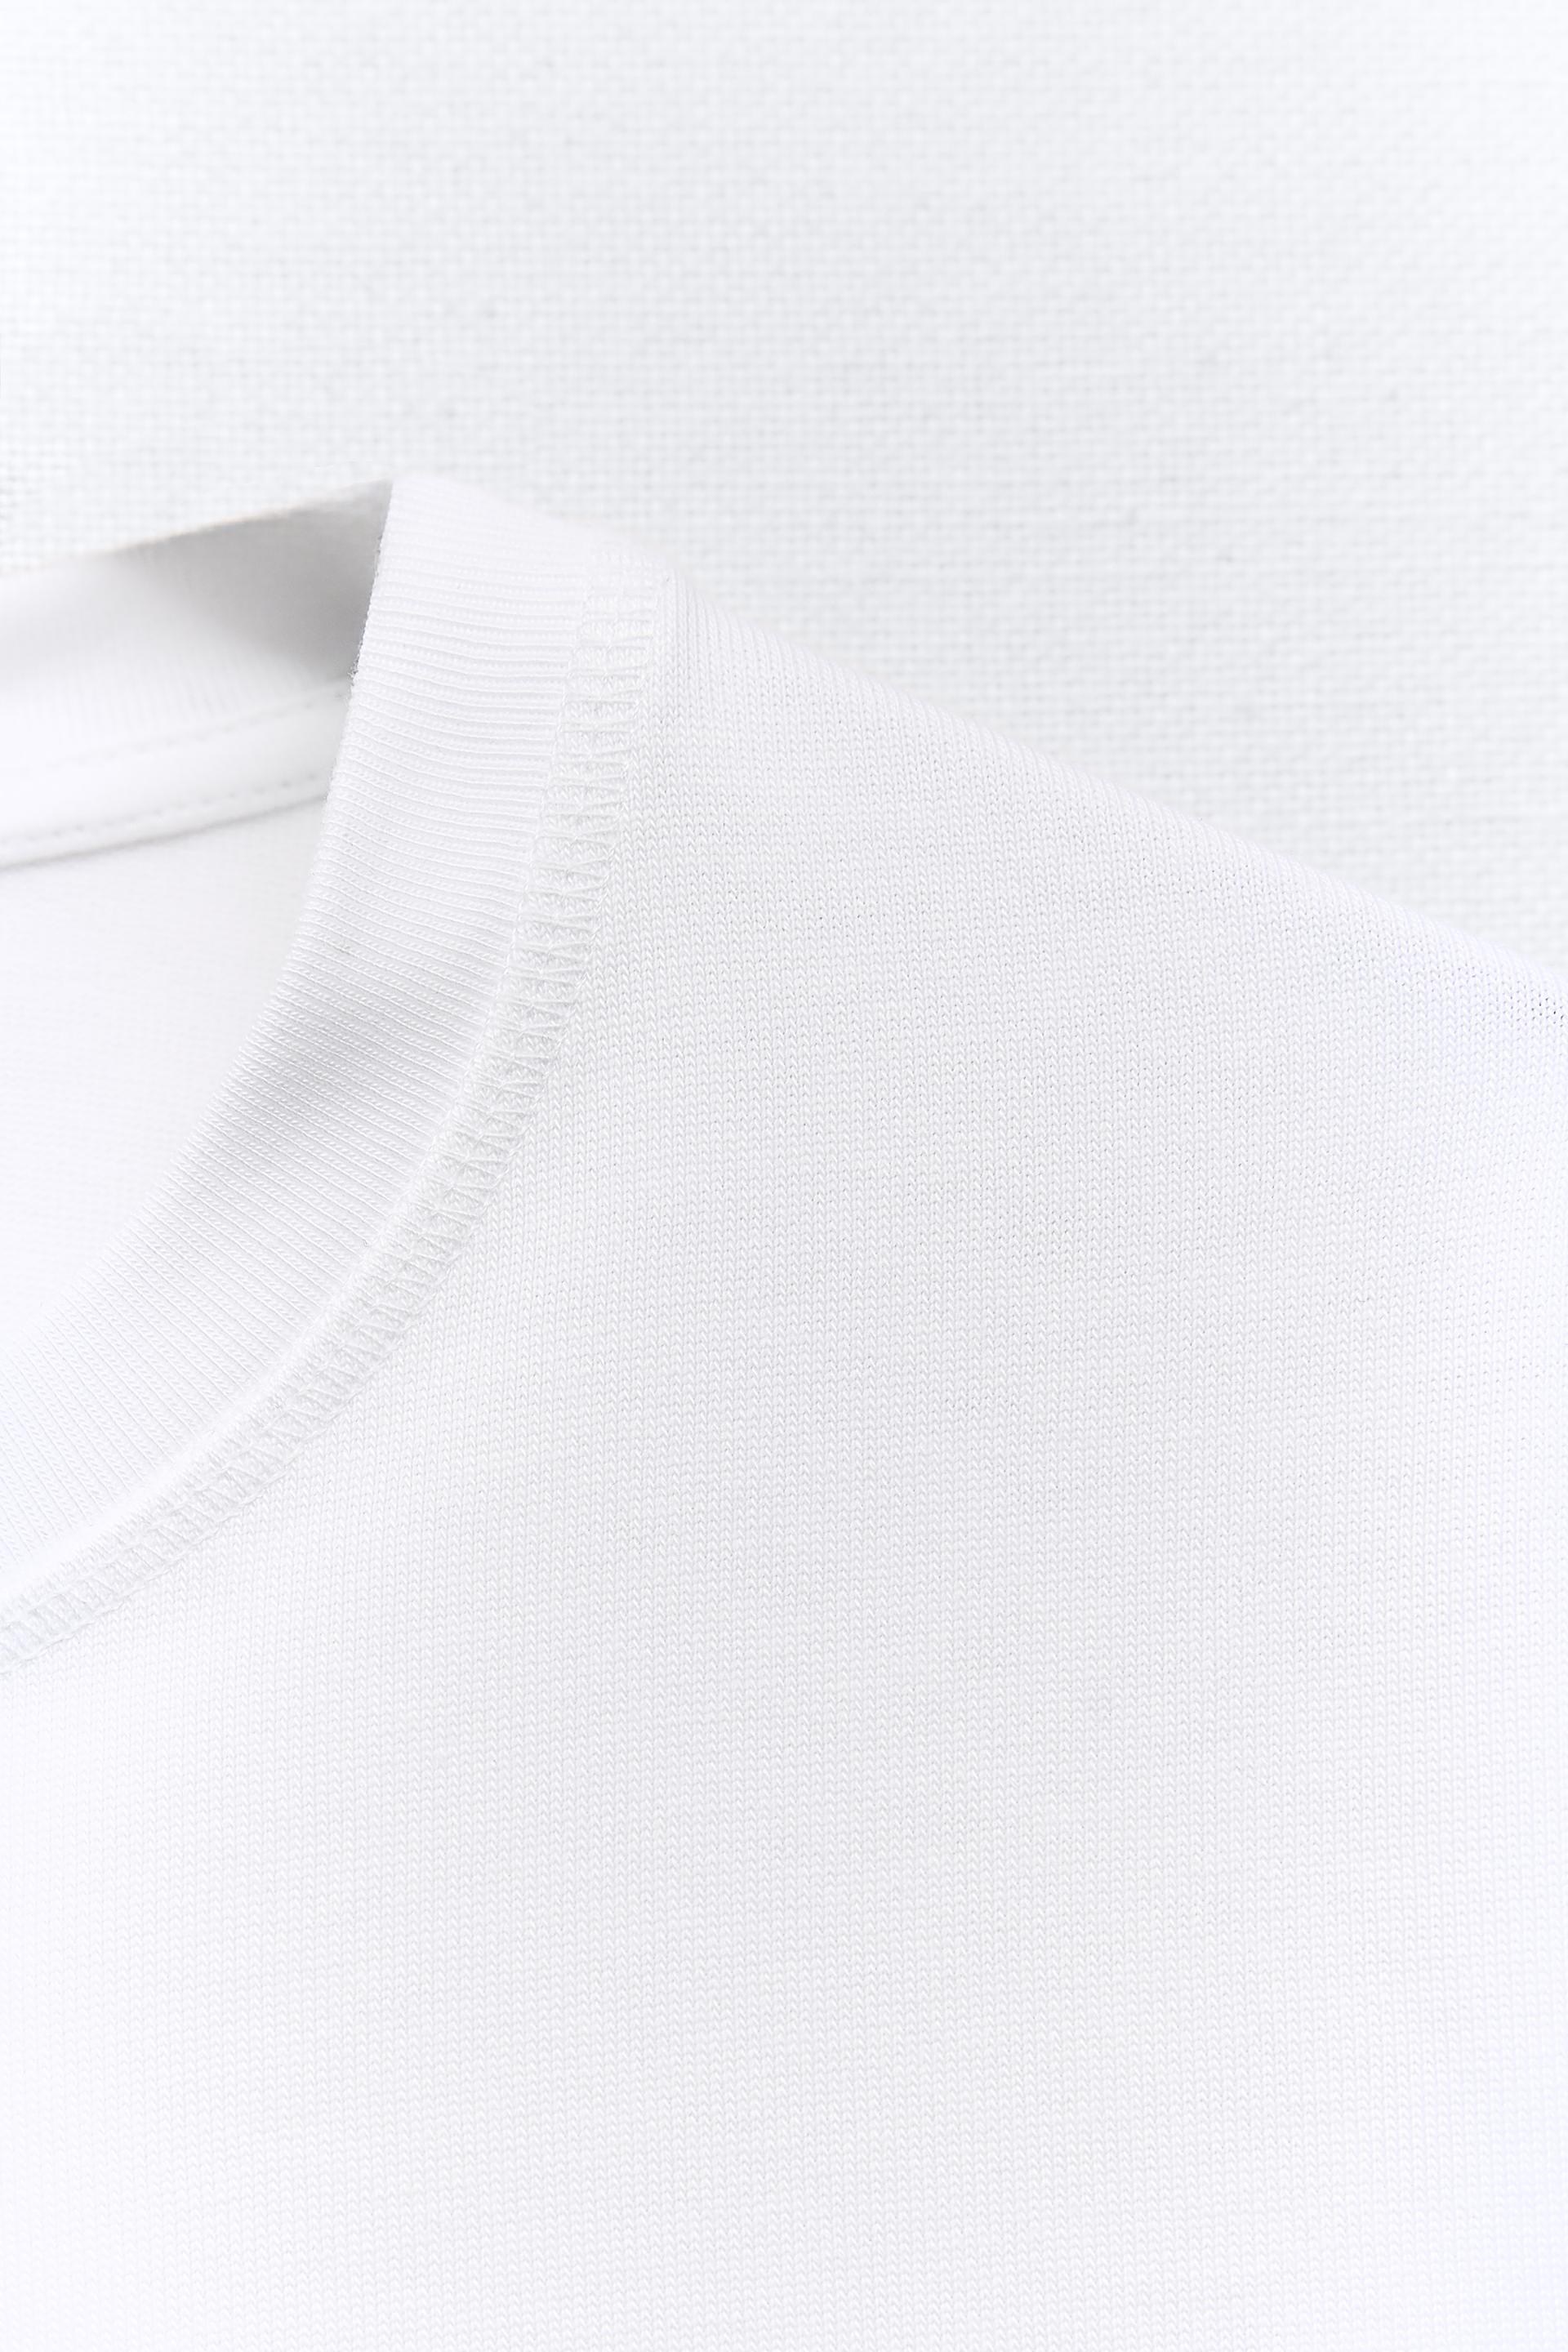 Plus size zara formal cotton pants and cotton white T-shirt mandanifas